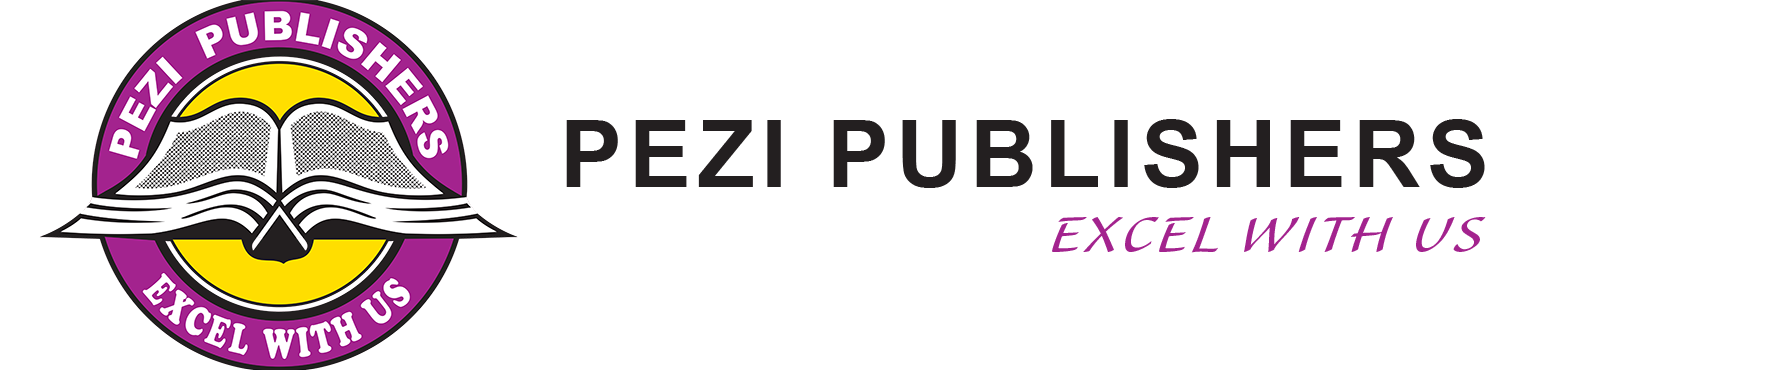 Pezi Publishers